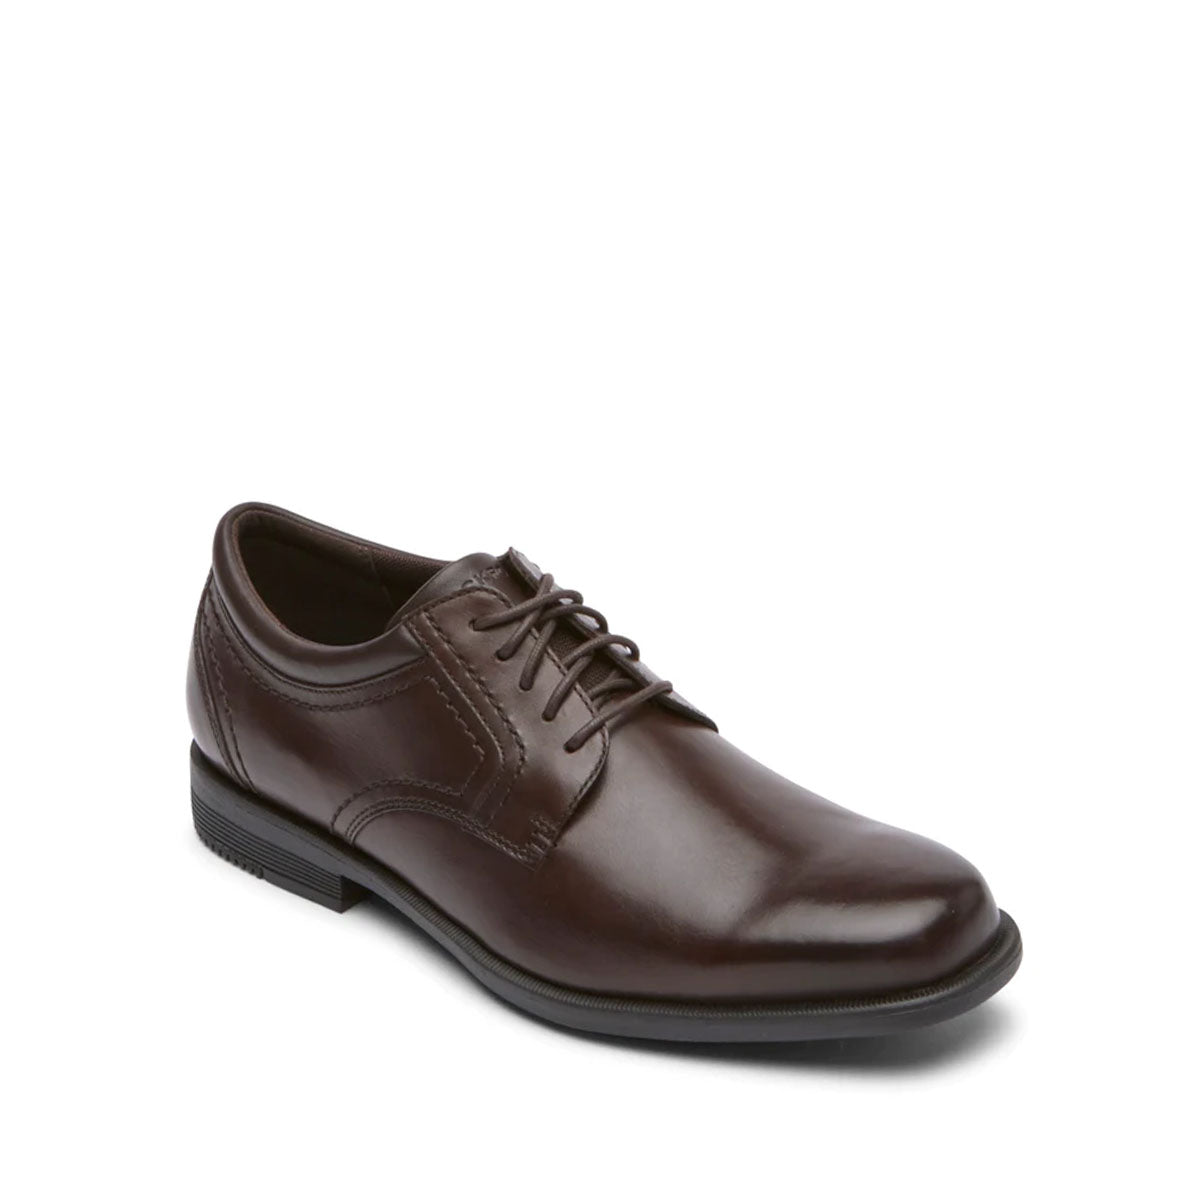 נעלי גברים אלגנטיות Rockport Isaac Plain Toe Dark Brown